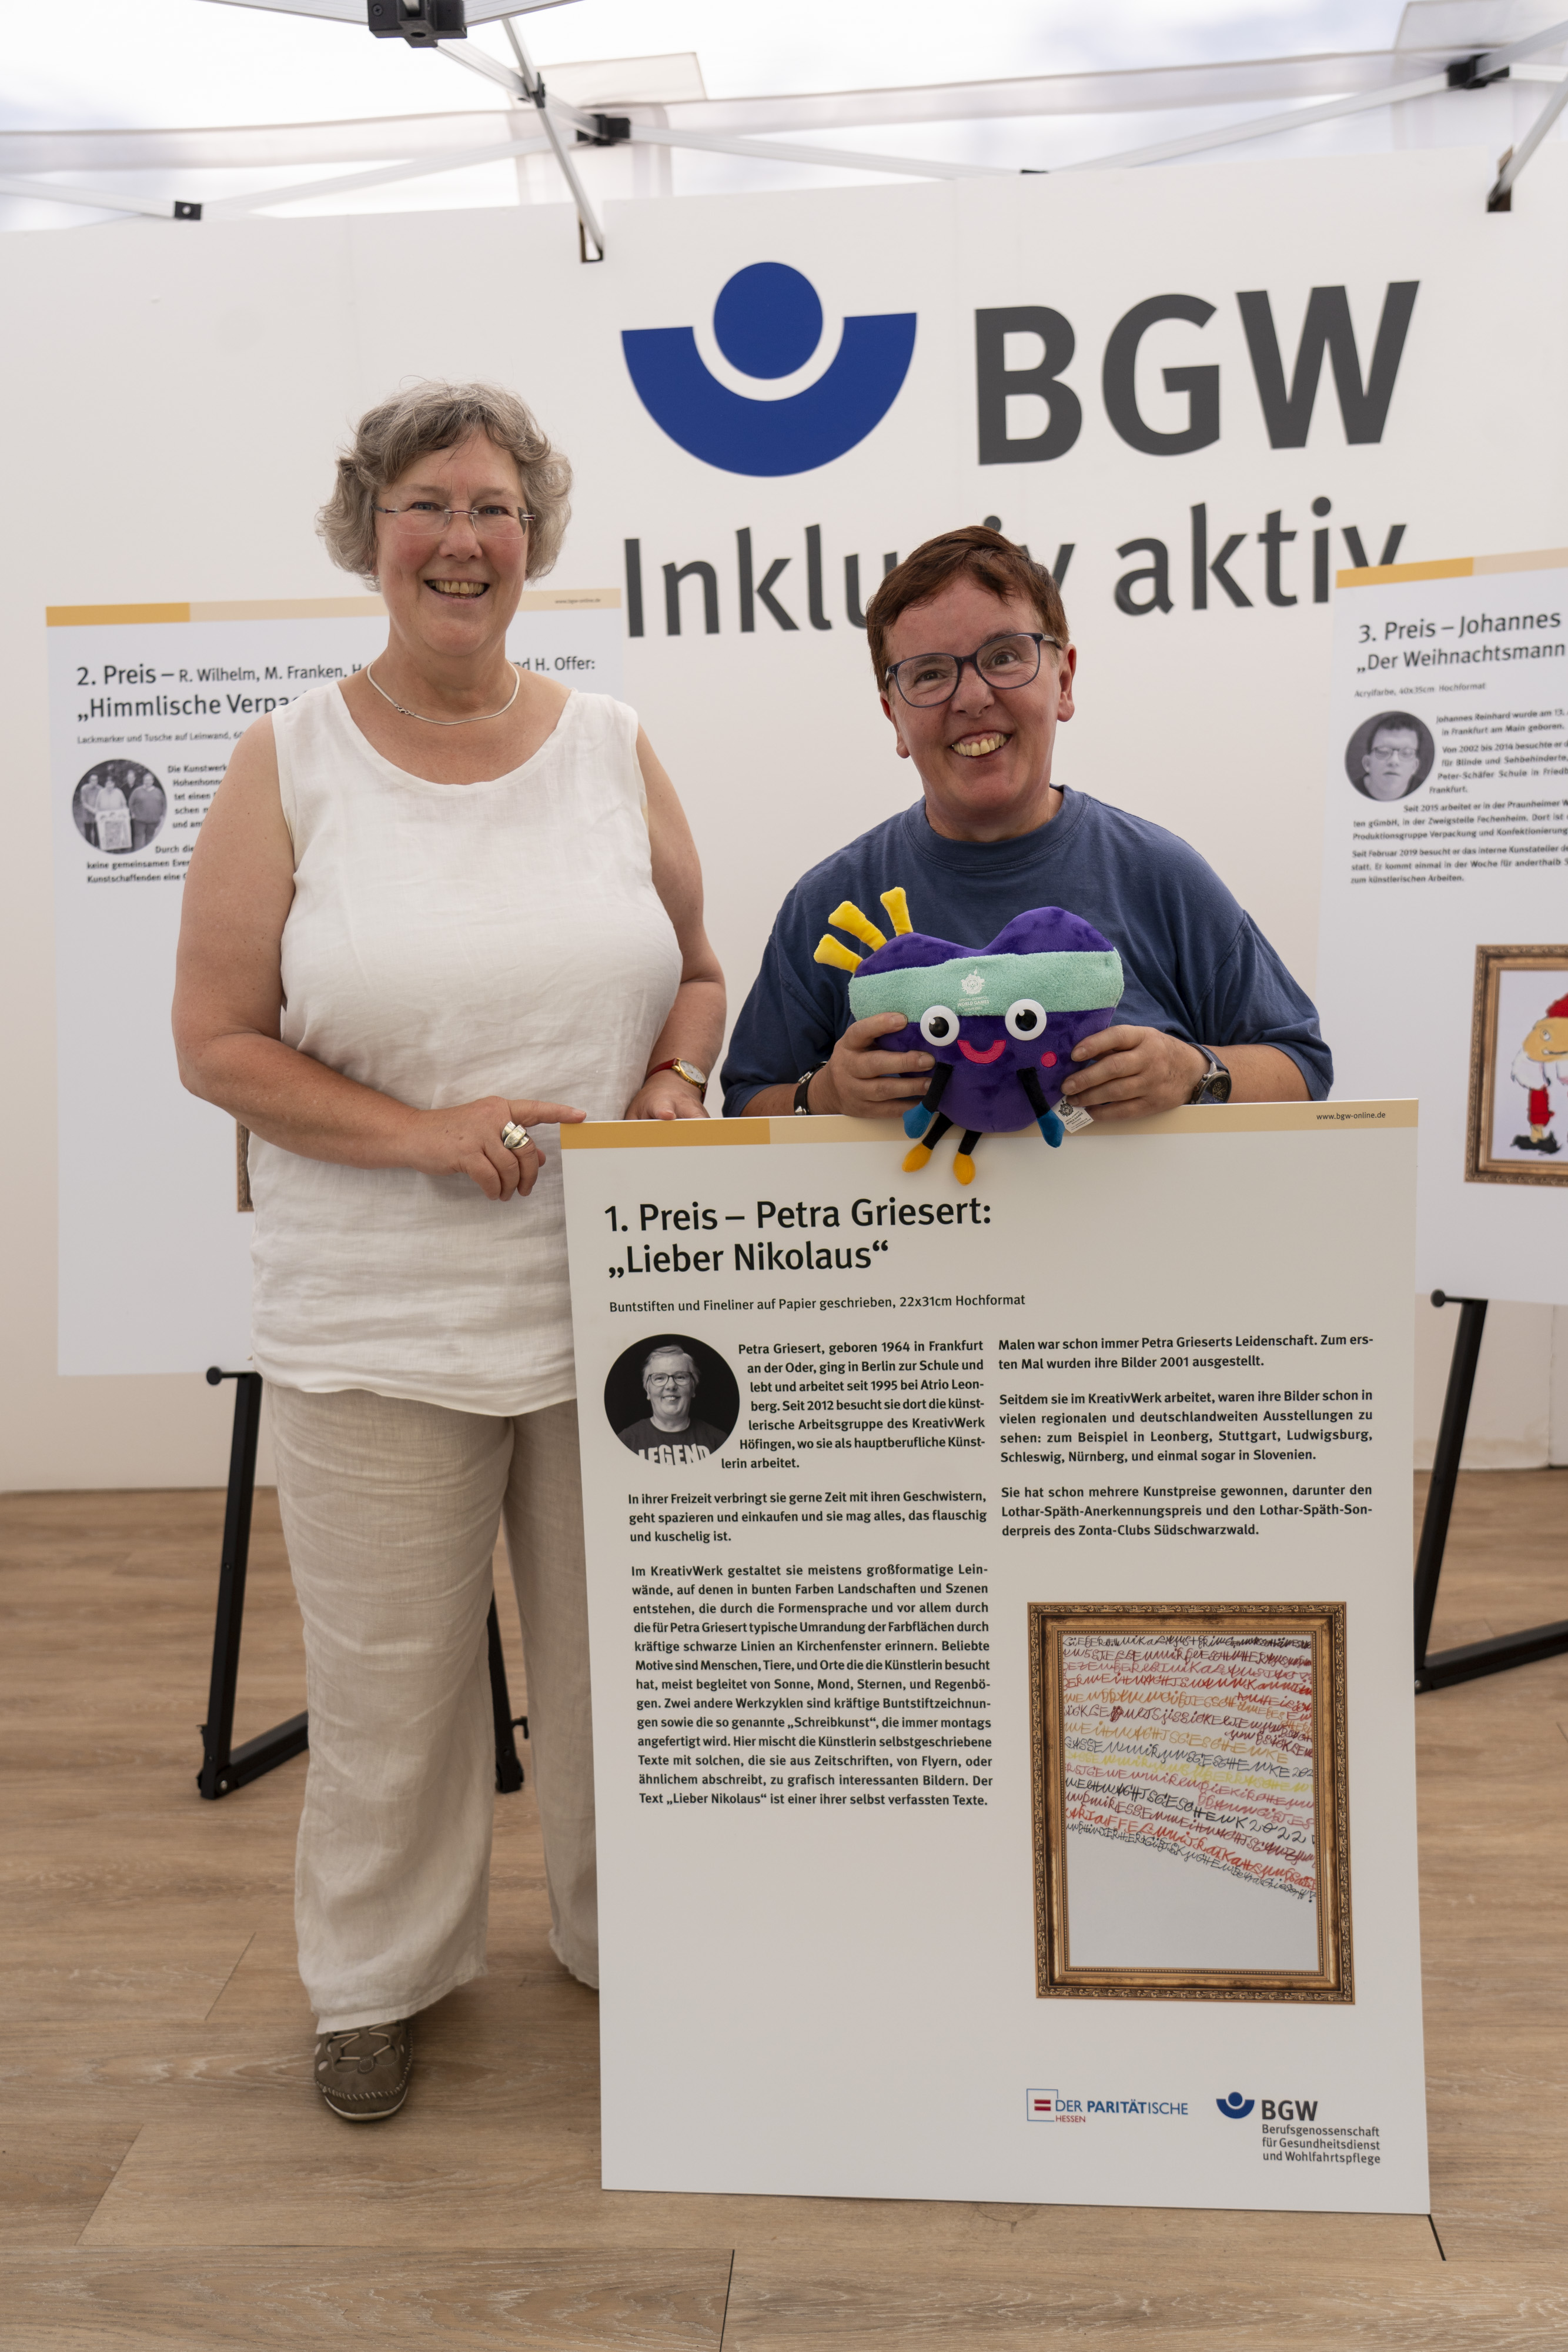  Silvia Thimm zusammen mit der Gewinnerin Petra Griesert. Die Gewinnerin hält das Maskotchen Unity in der Hand und steht hinter einer Tafel mit ihrem Bild und Text dazu am BGW-Stand.